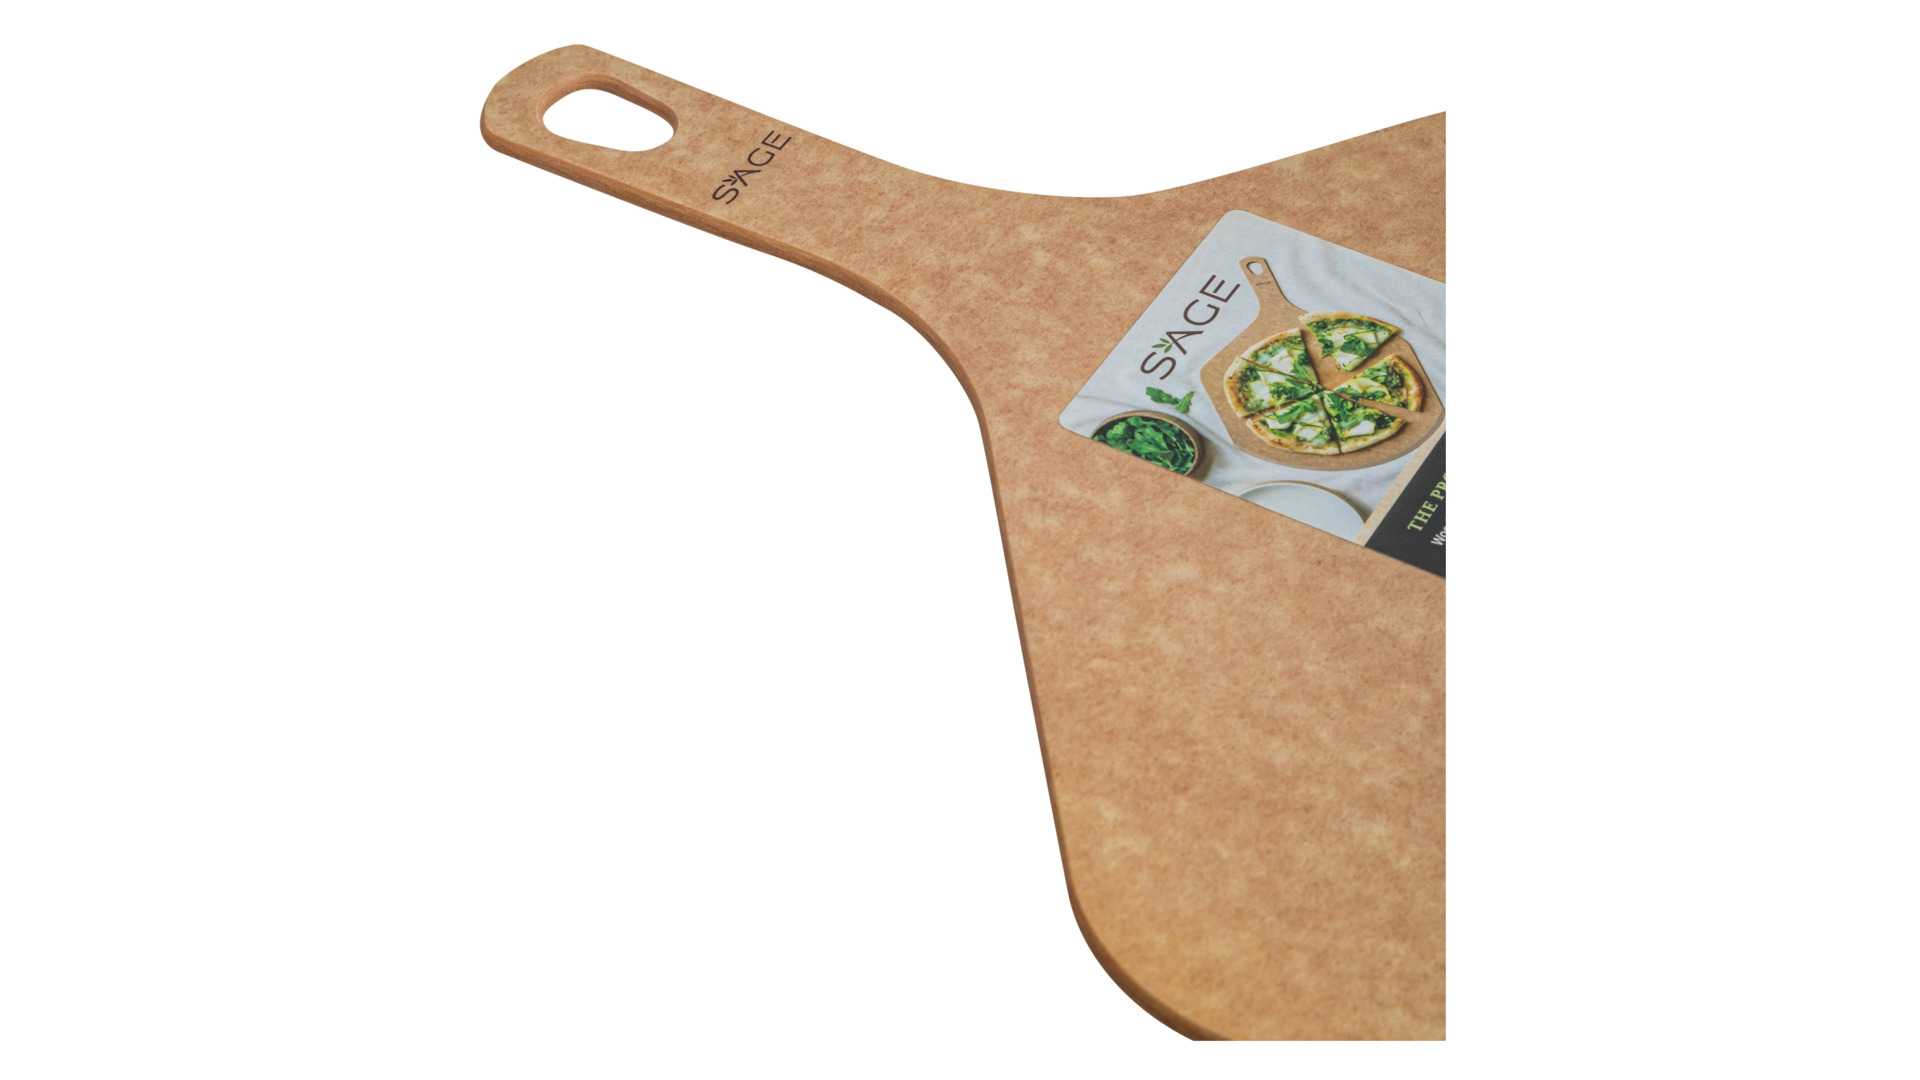 Доска сервировочная для пиццы Sage 45х30 см, древесный композит, бежевая